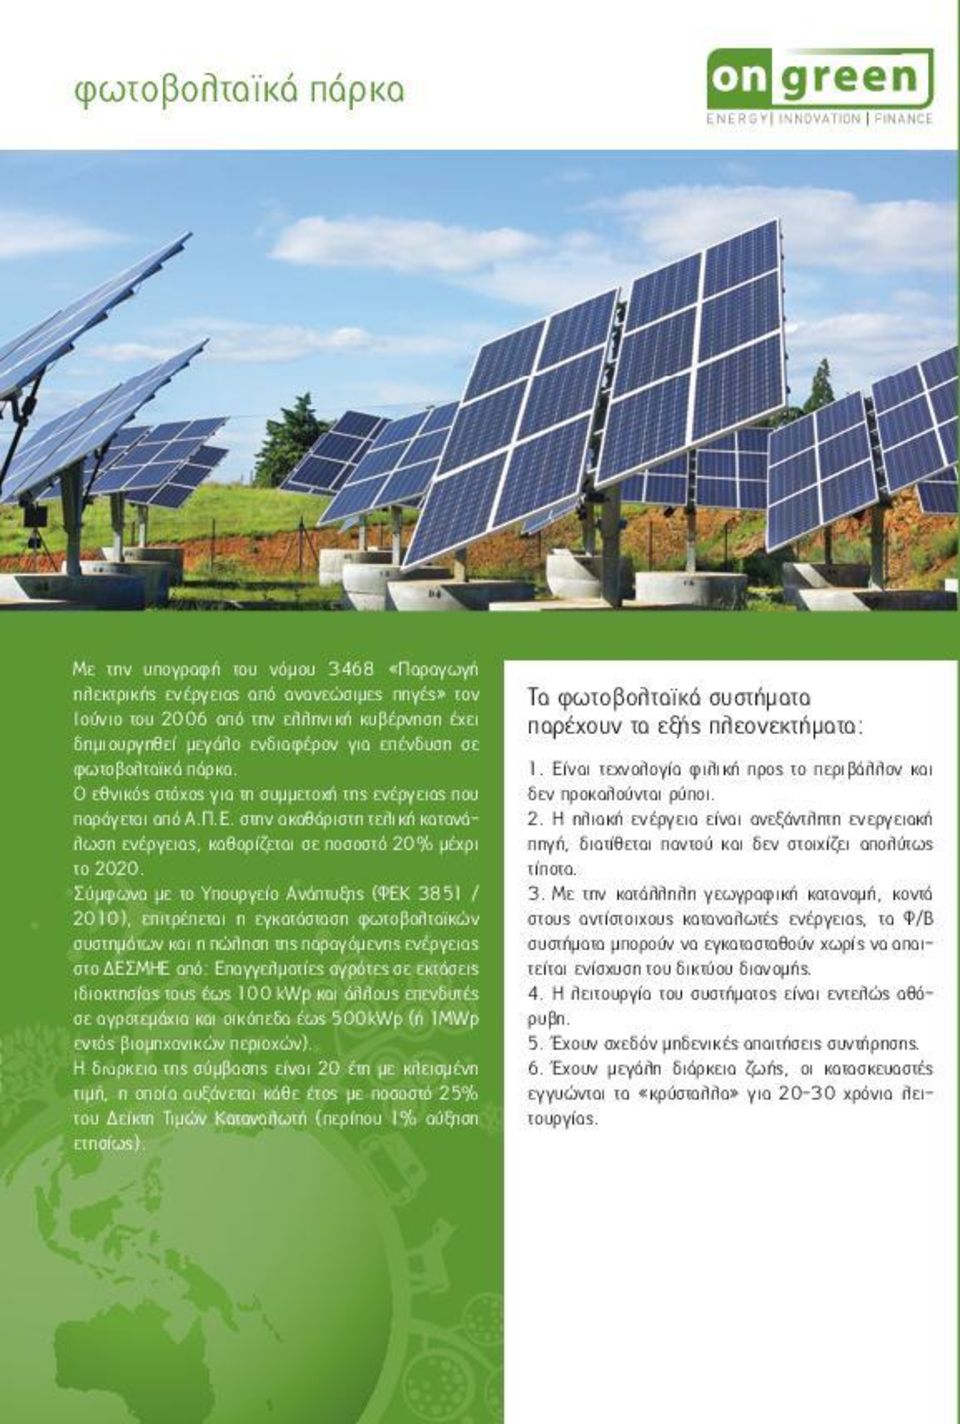 Σύμφωνα με το Υπουργείο Ανάπτυξης (ΦΕΚ 3851 / 2010), επιτρέπεται η εγκατάσταση φωτοβολταϊκών συστημάτων και η πώληση της παραγόμενης ενέργειας στο ΔΕΣΜΗΕ από: Επαγγελματίες αγρότες σε εκτάσεις